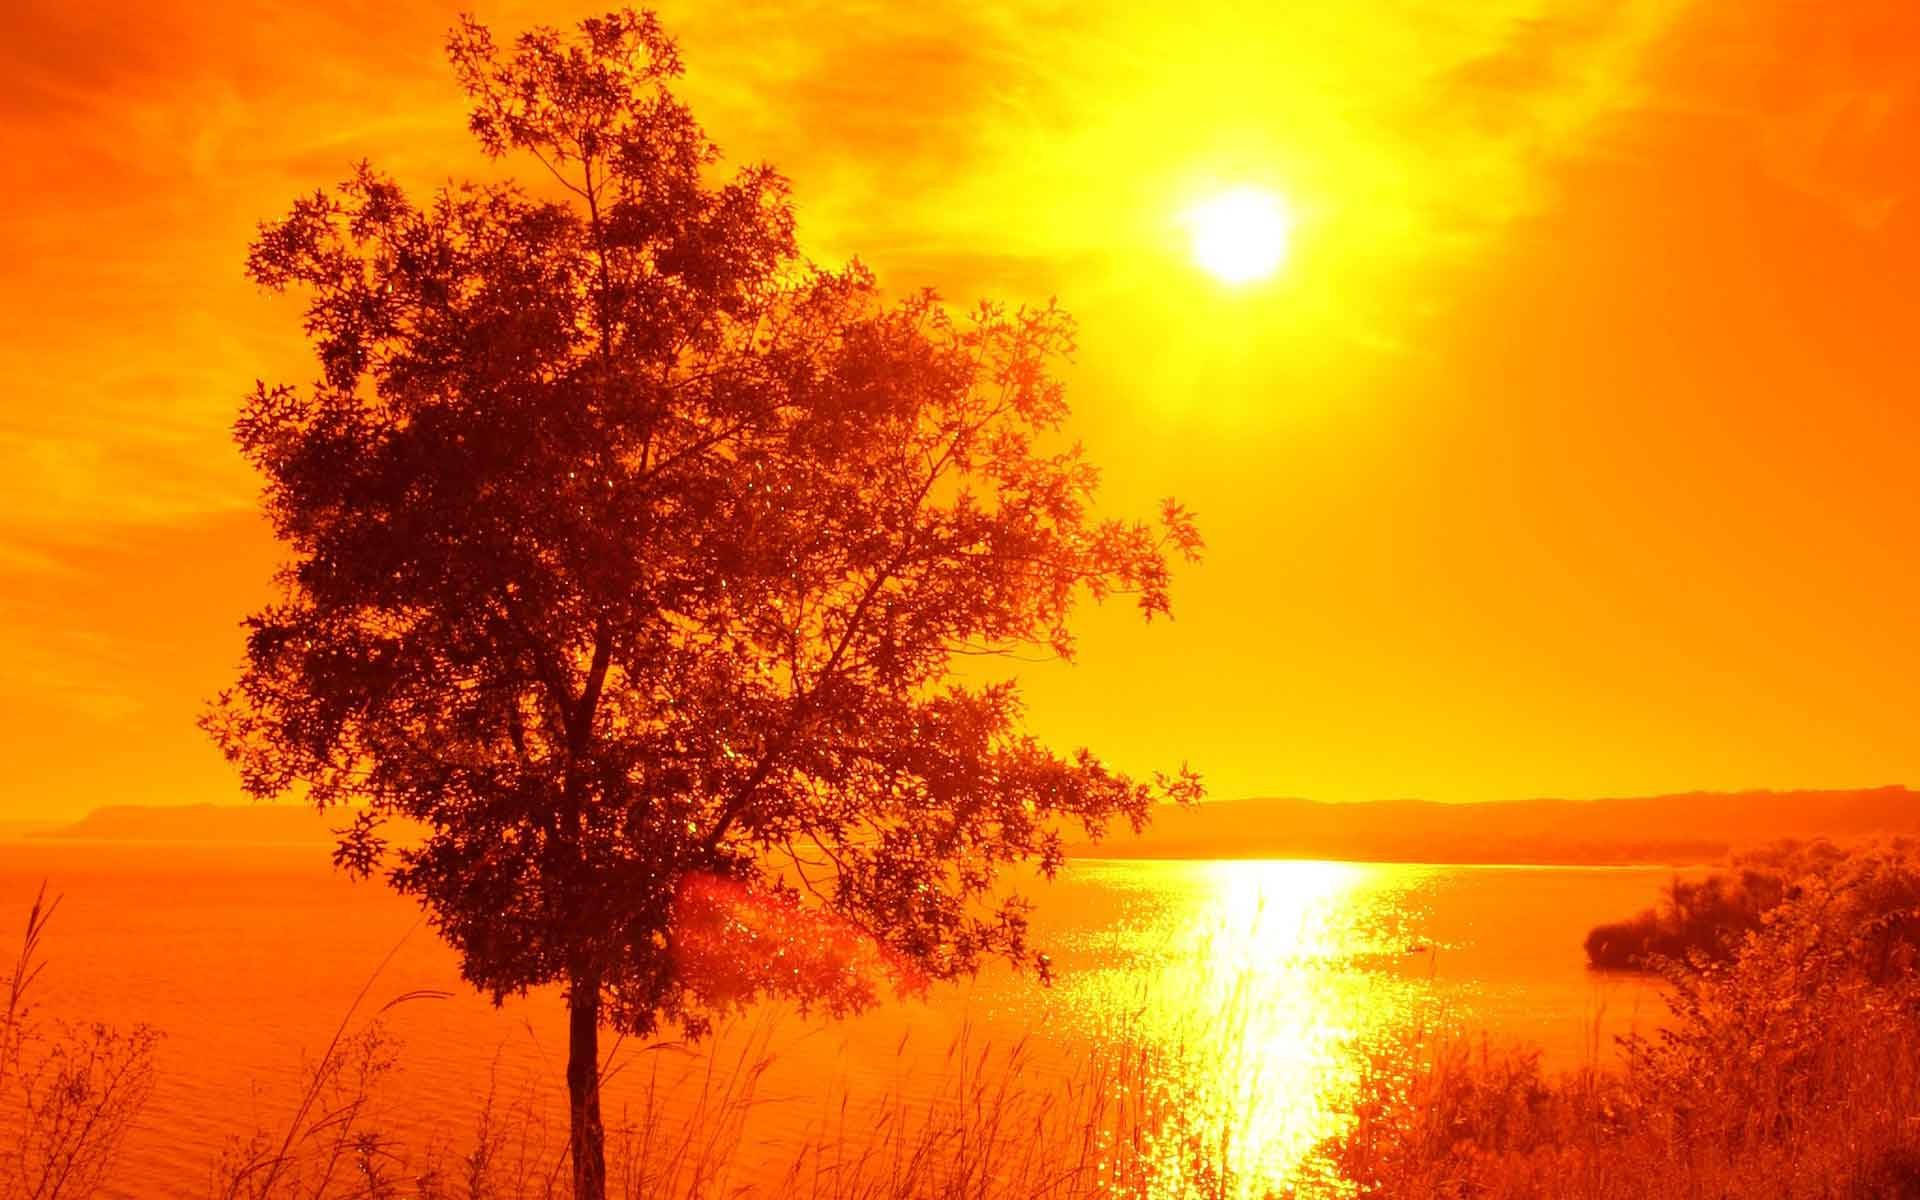 Orange-tinted Sunrise Nature Background